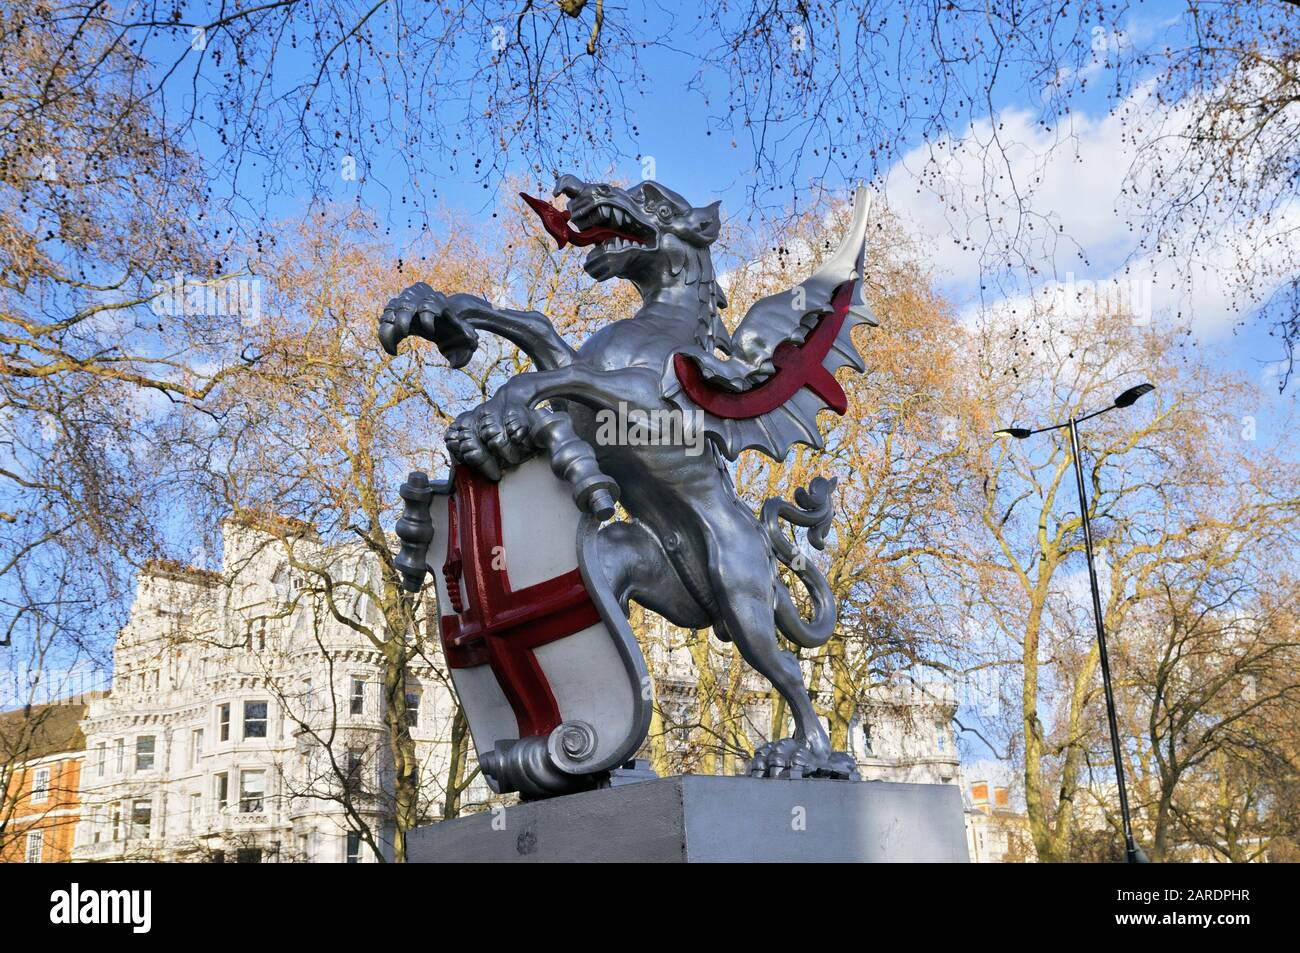 Statua del drago sul Victoria Embankment che segna il confine tra la City of London e la City of Westminster. Londra, Inghilterra, Regno Unito Foto Stock